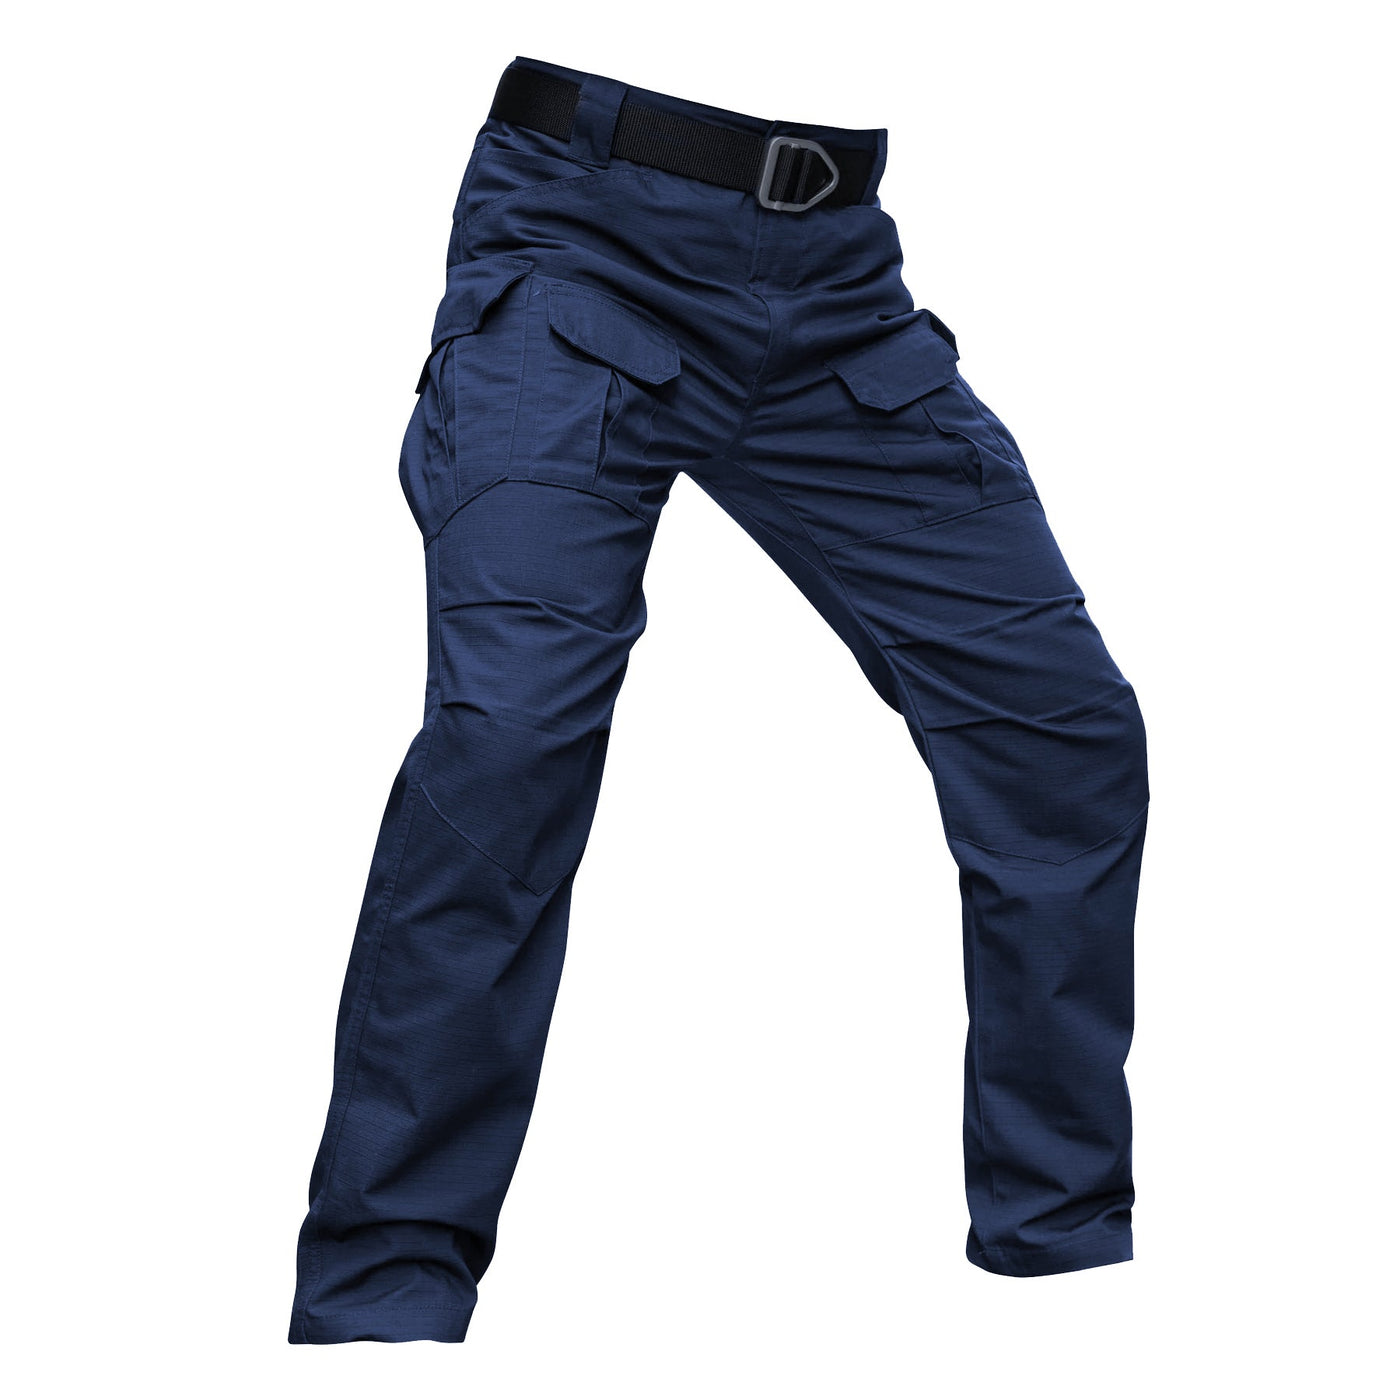 Archon IX8 Outdoor Waterproof Tactical Pants-Navy blue